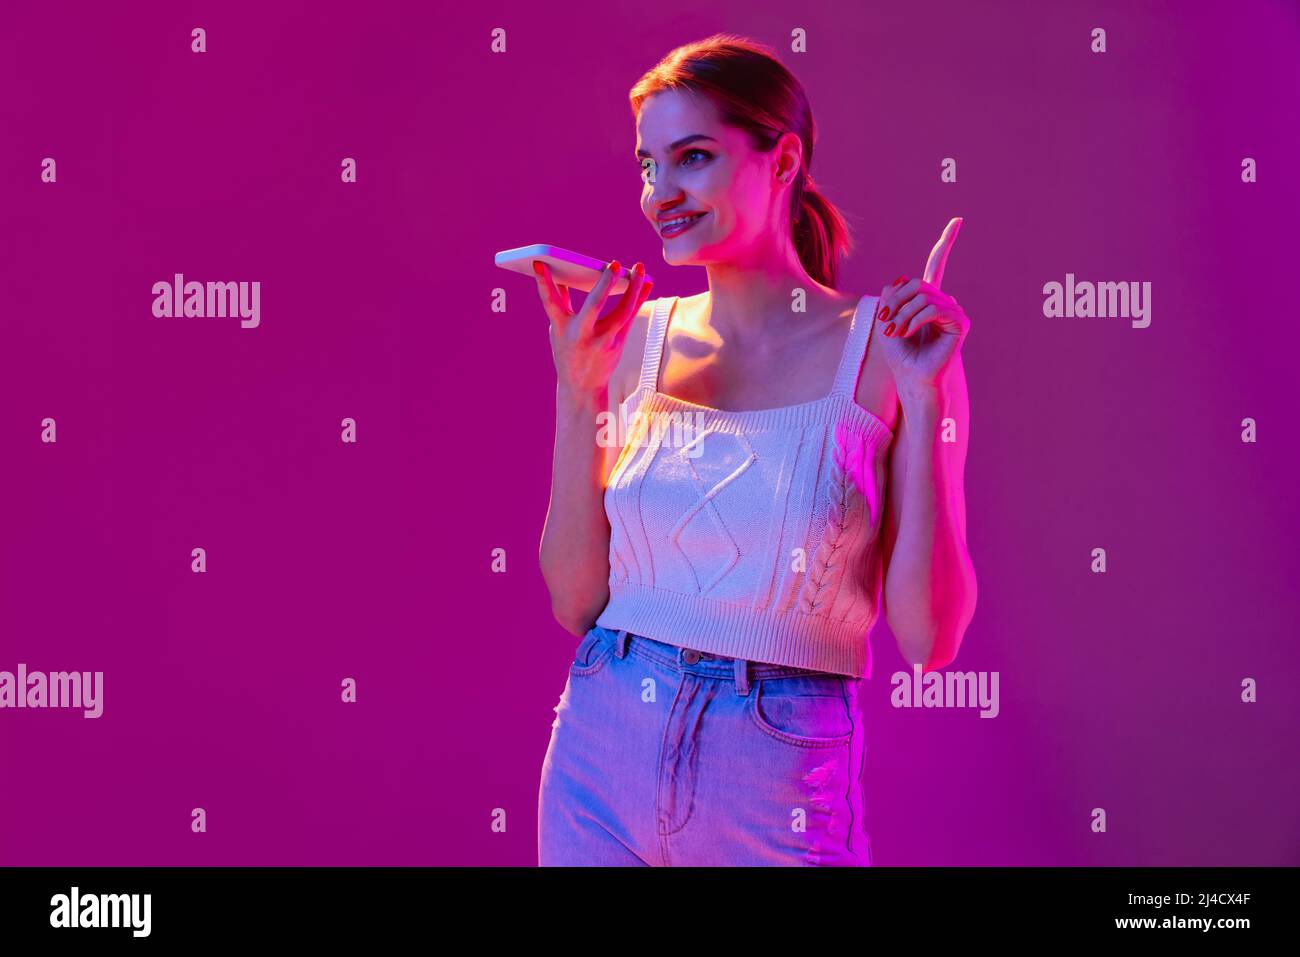 Giovane bella ragazza felice registrazione messaggio vocale sul telefono isolato su sfondo viola in filtro neon. Concetto di emozioni, tecnologie digitali Foto Stock